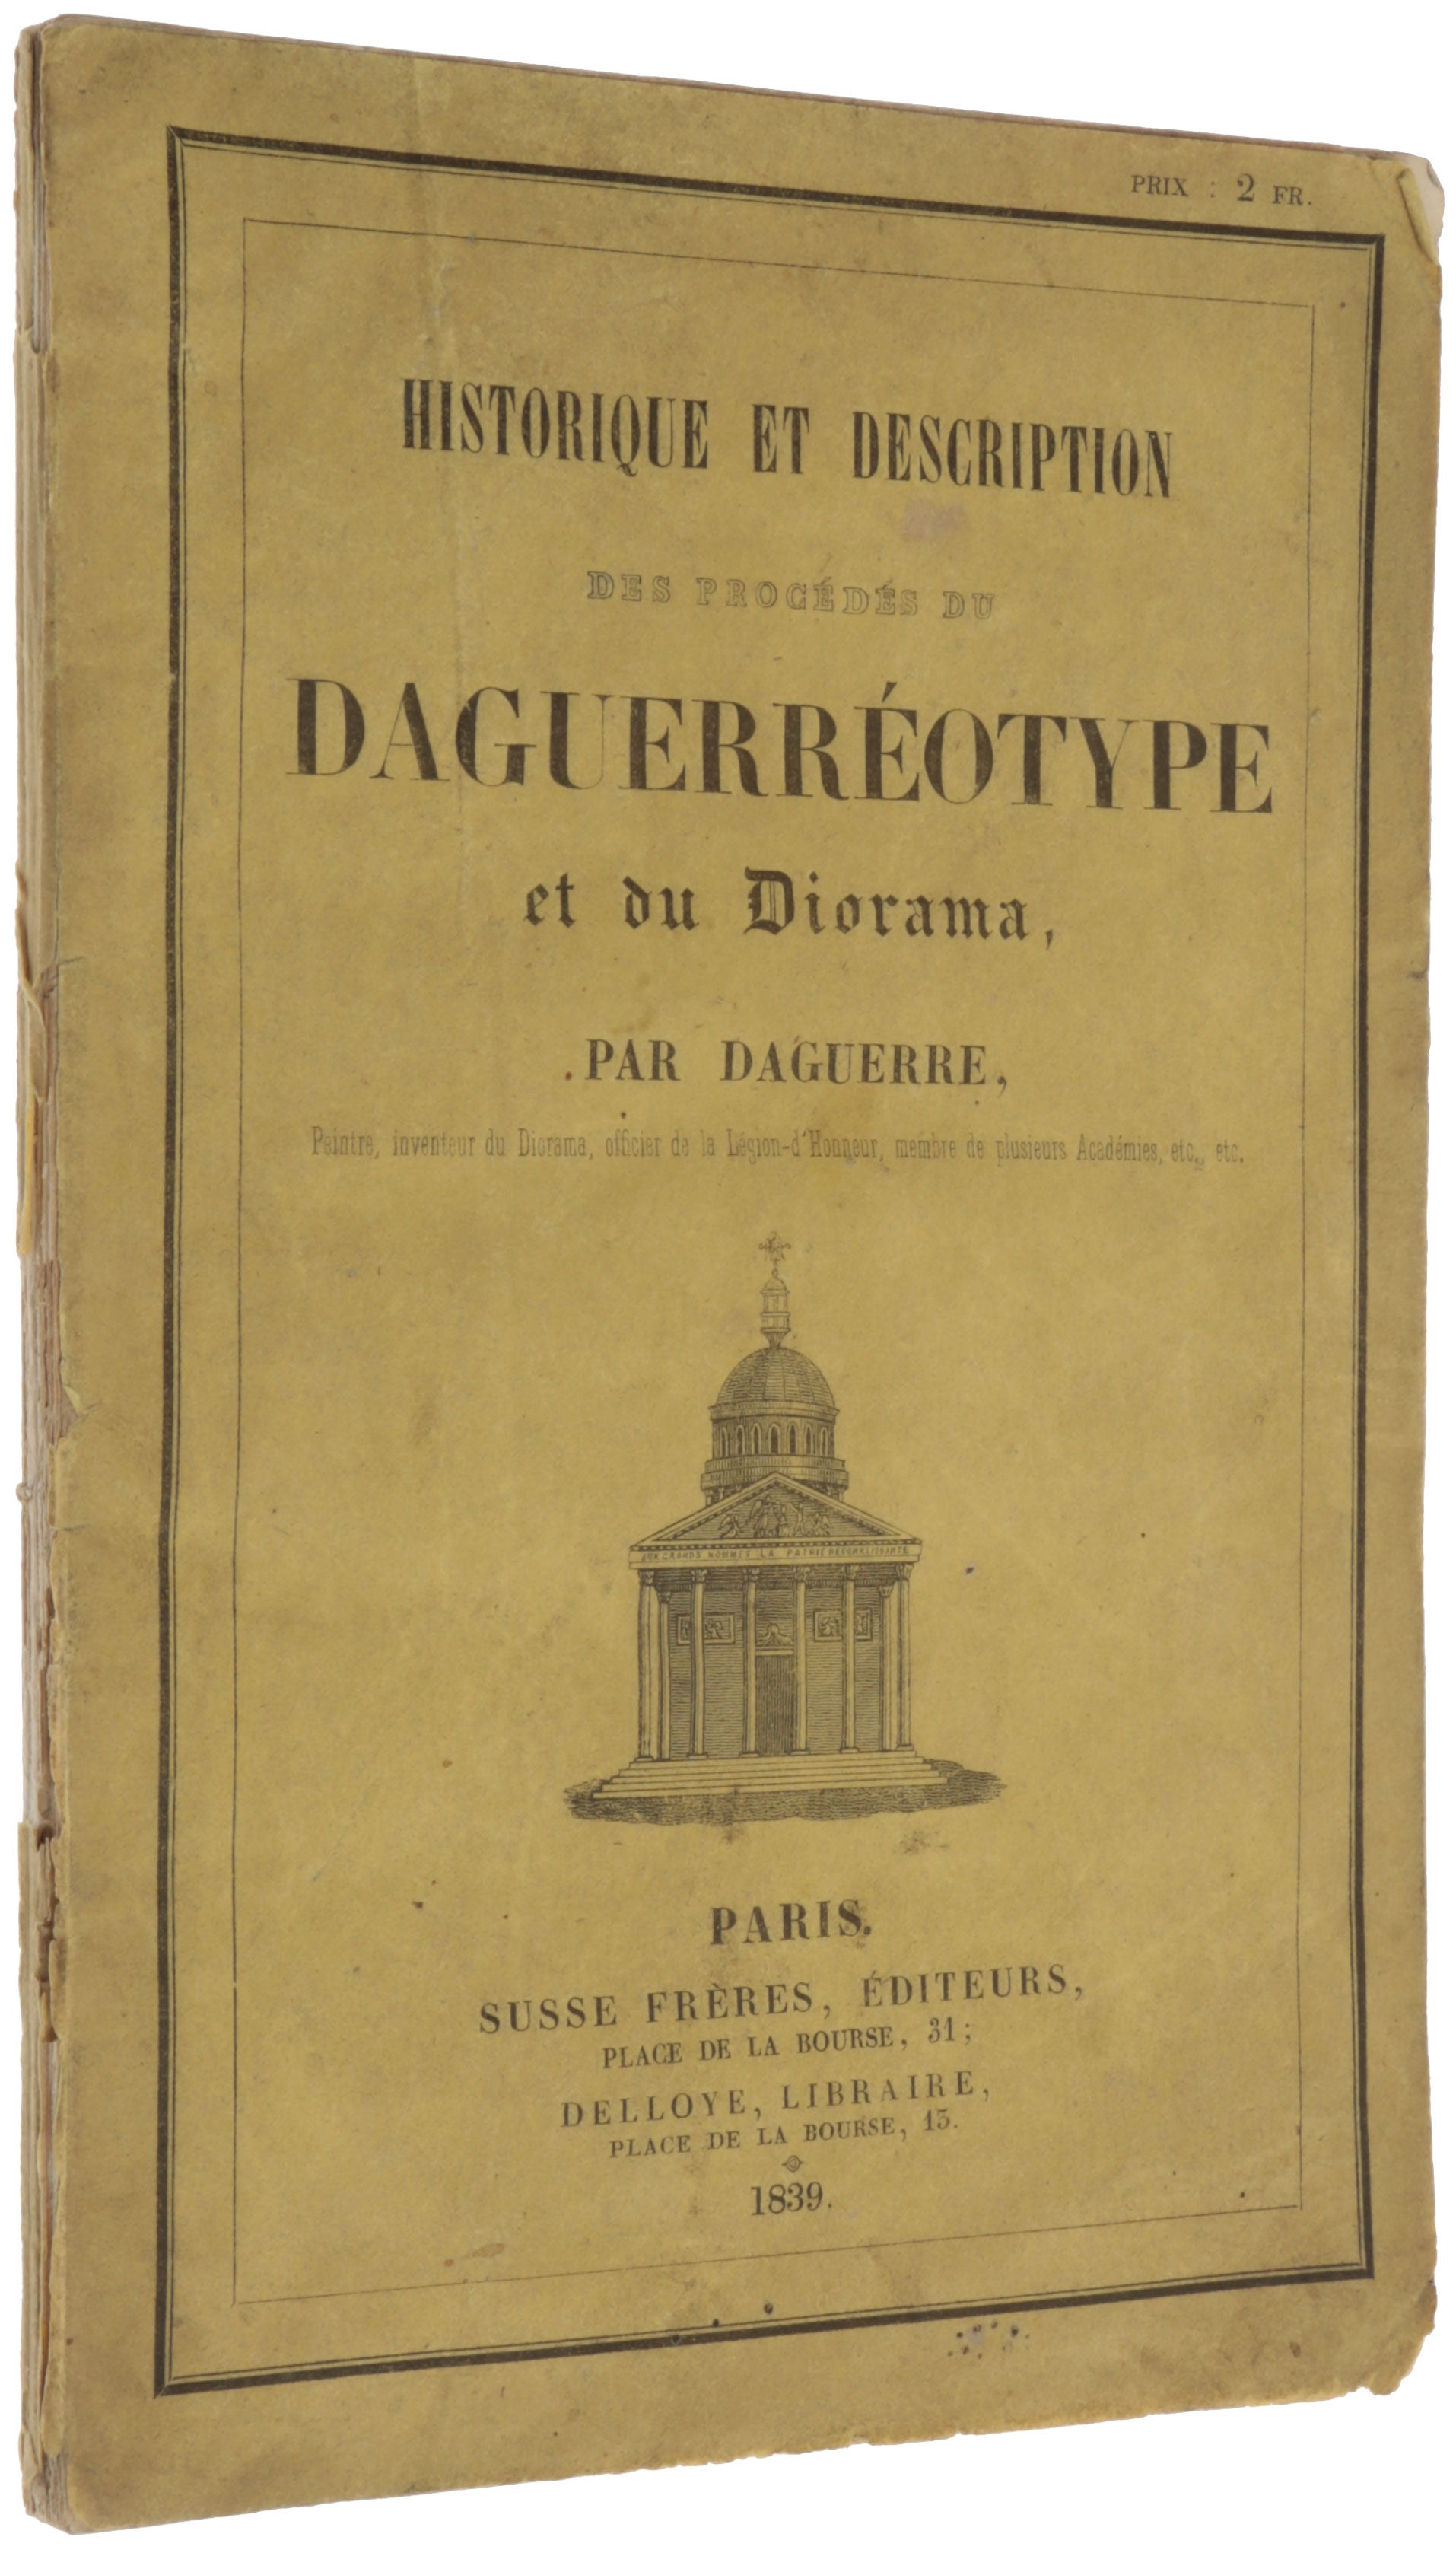 Item #5602 Historique et description des procédés du daguerréotype et du diorama. Louis-Jacques Mandé DAGUERRE.